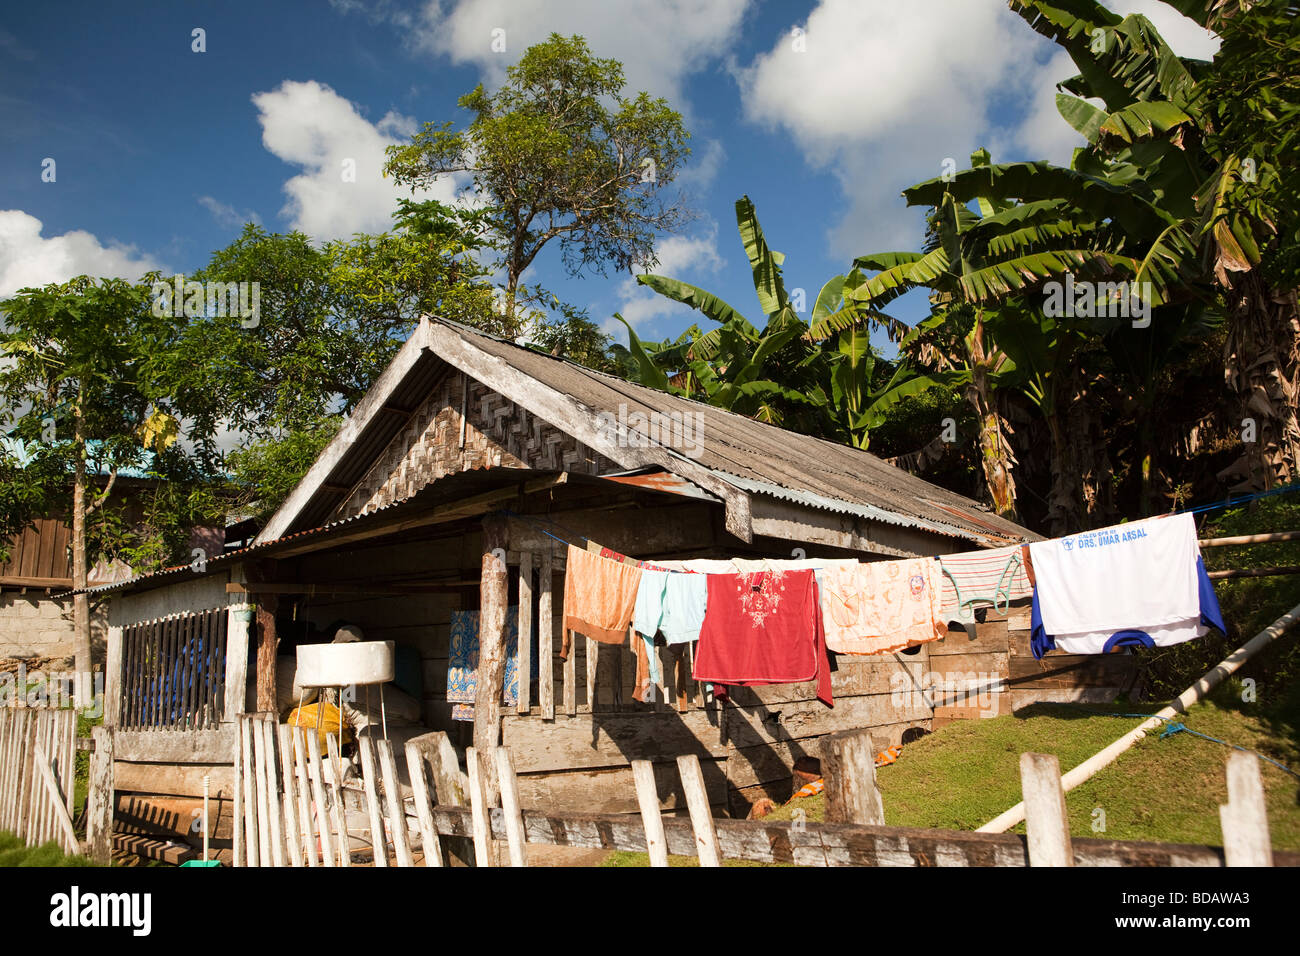 Indonesia Sulawesi Buton Labundo Bundo washing hanging outside wooden house Stock Photo